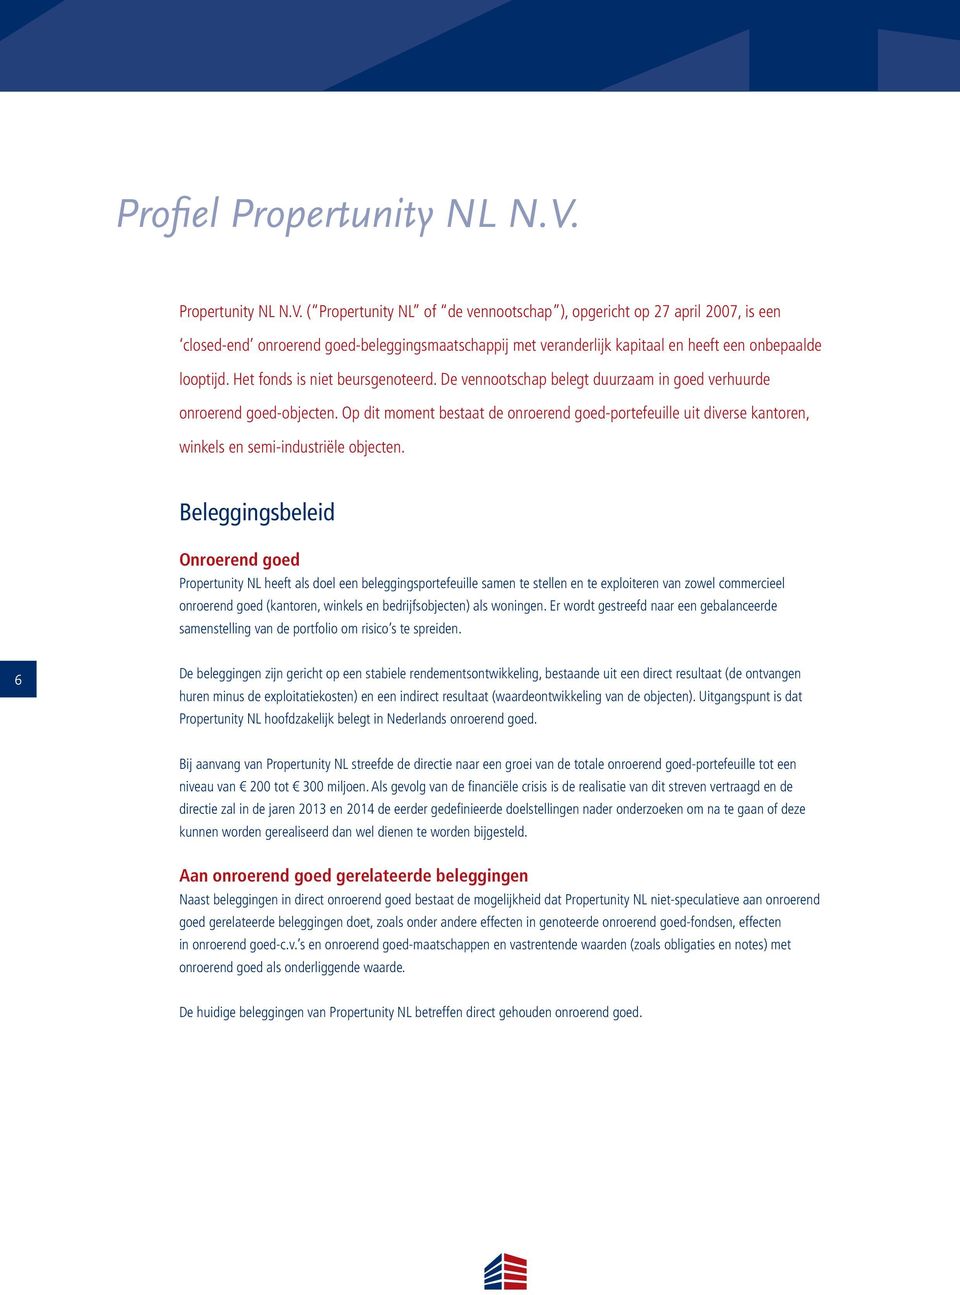 ( Propertunity NL of de vennootschap ), opgericht op 27 april 2007, is een closed-end onroerend goed-beleggingsmaatschappij met veranderlijk kapitaal en heeft een onbepaalde looptijd.